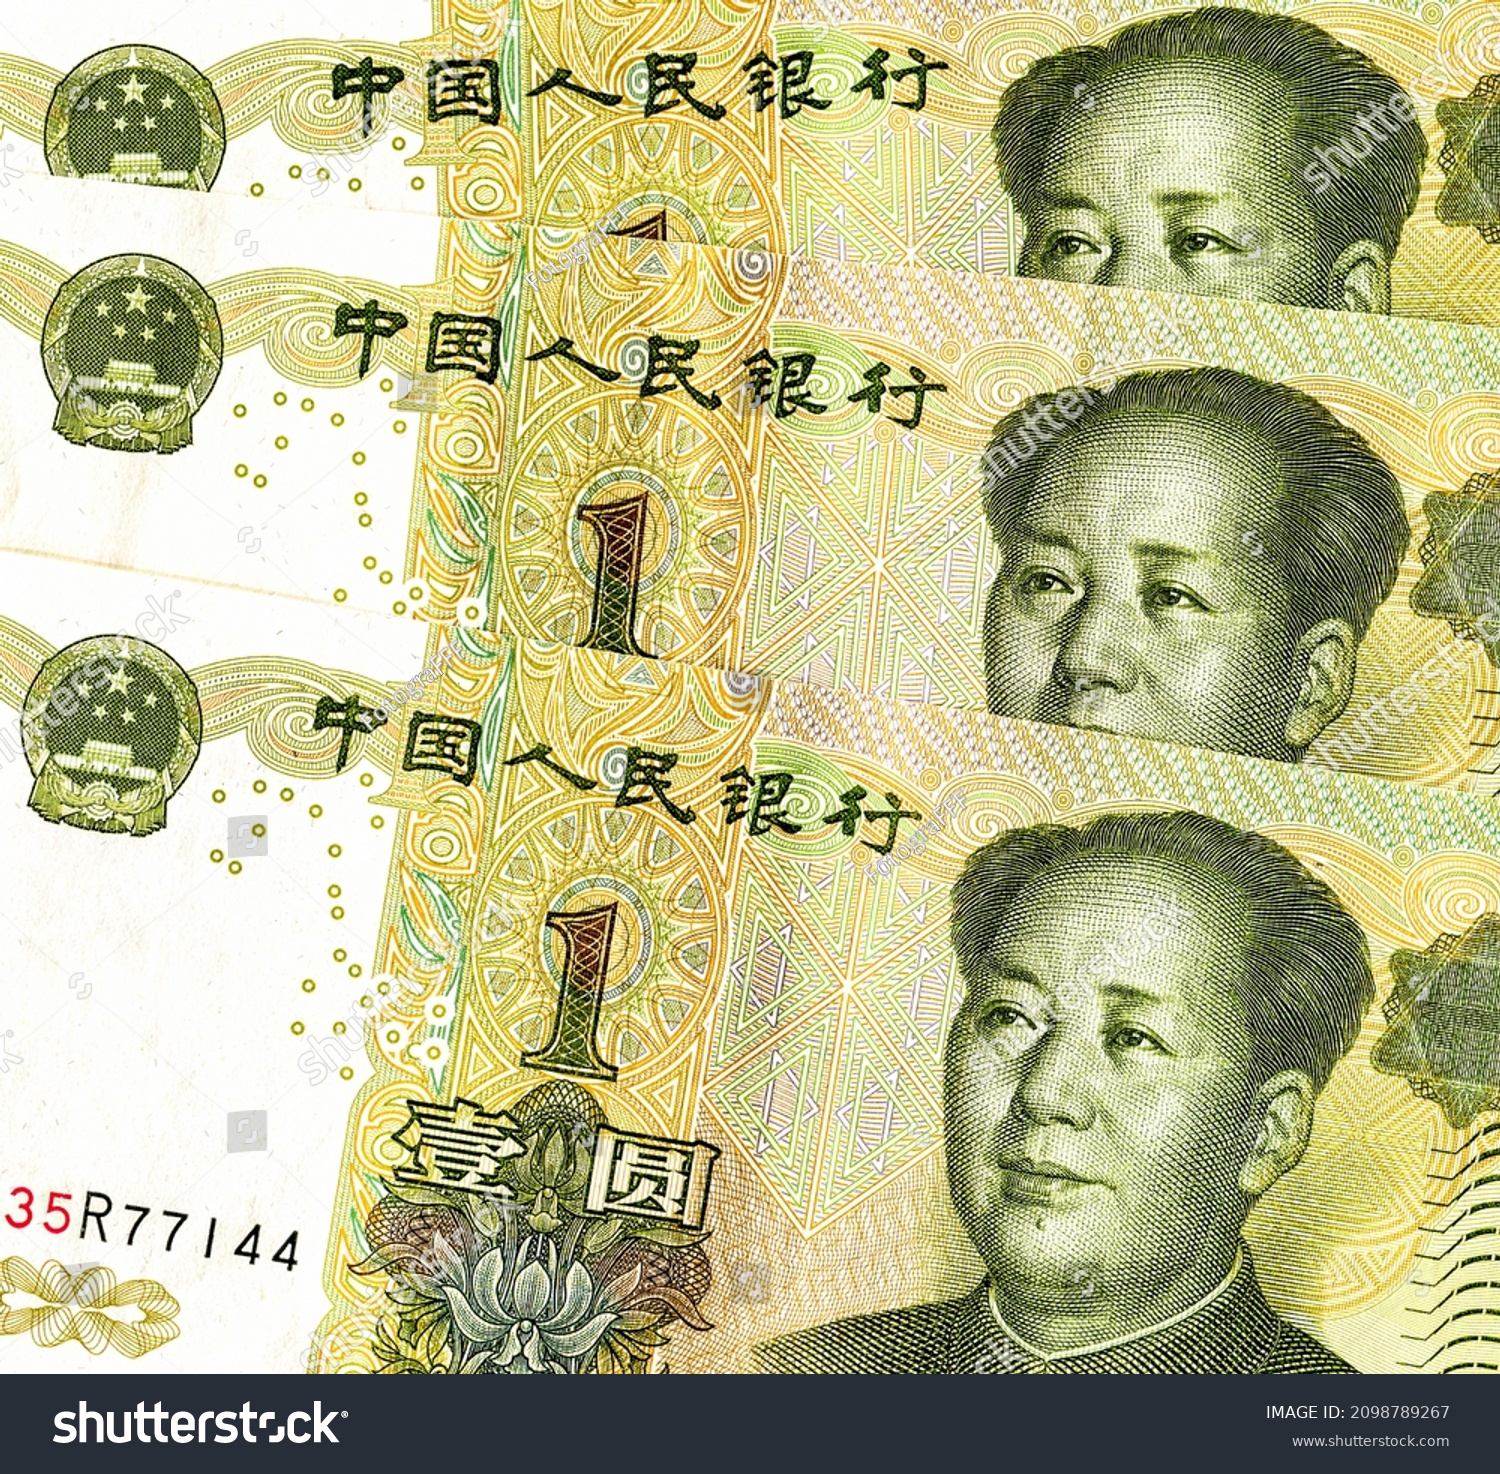 Zedong」の画像、写真素材、ベクター画像 | Shutterstock